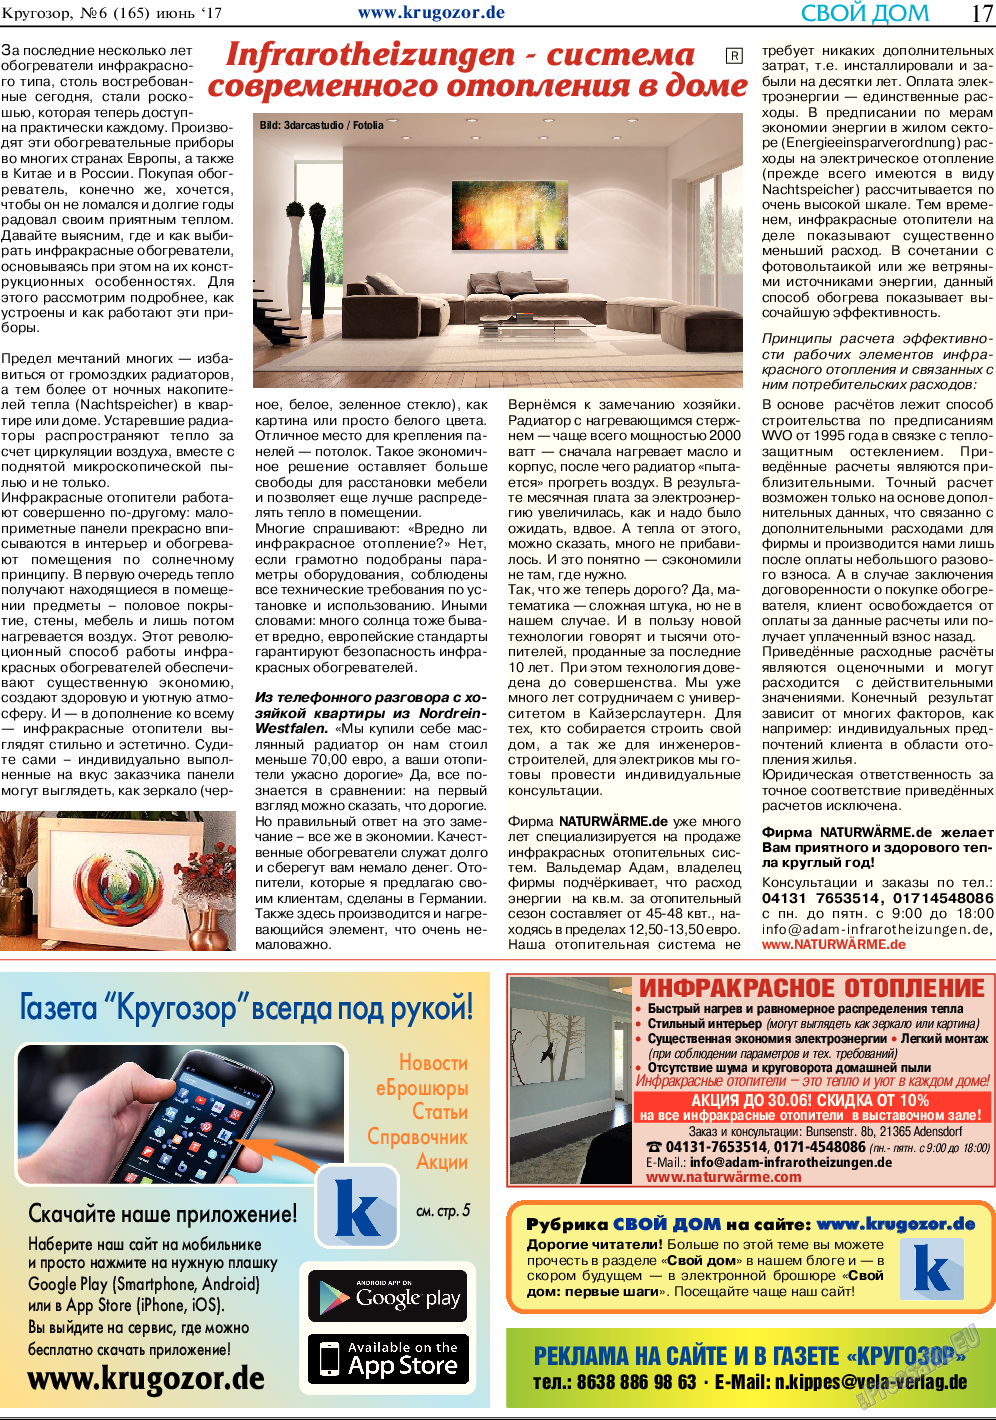 Кругозор, газета. 2017 №6 стр.17